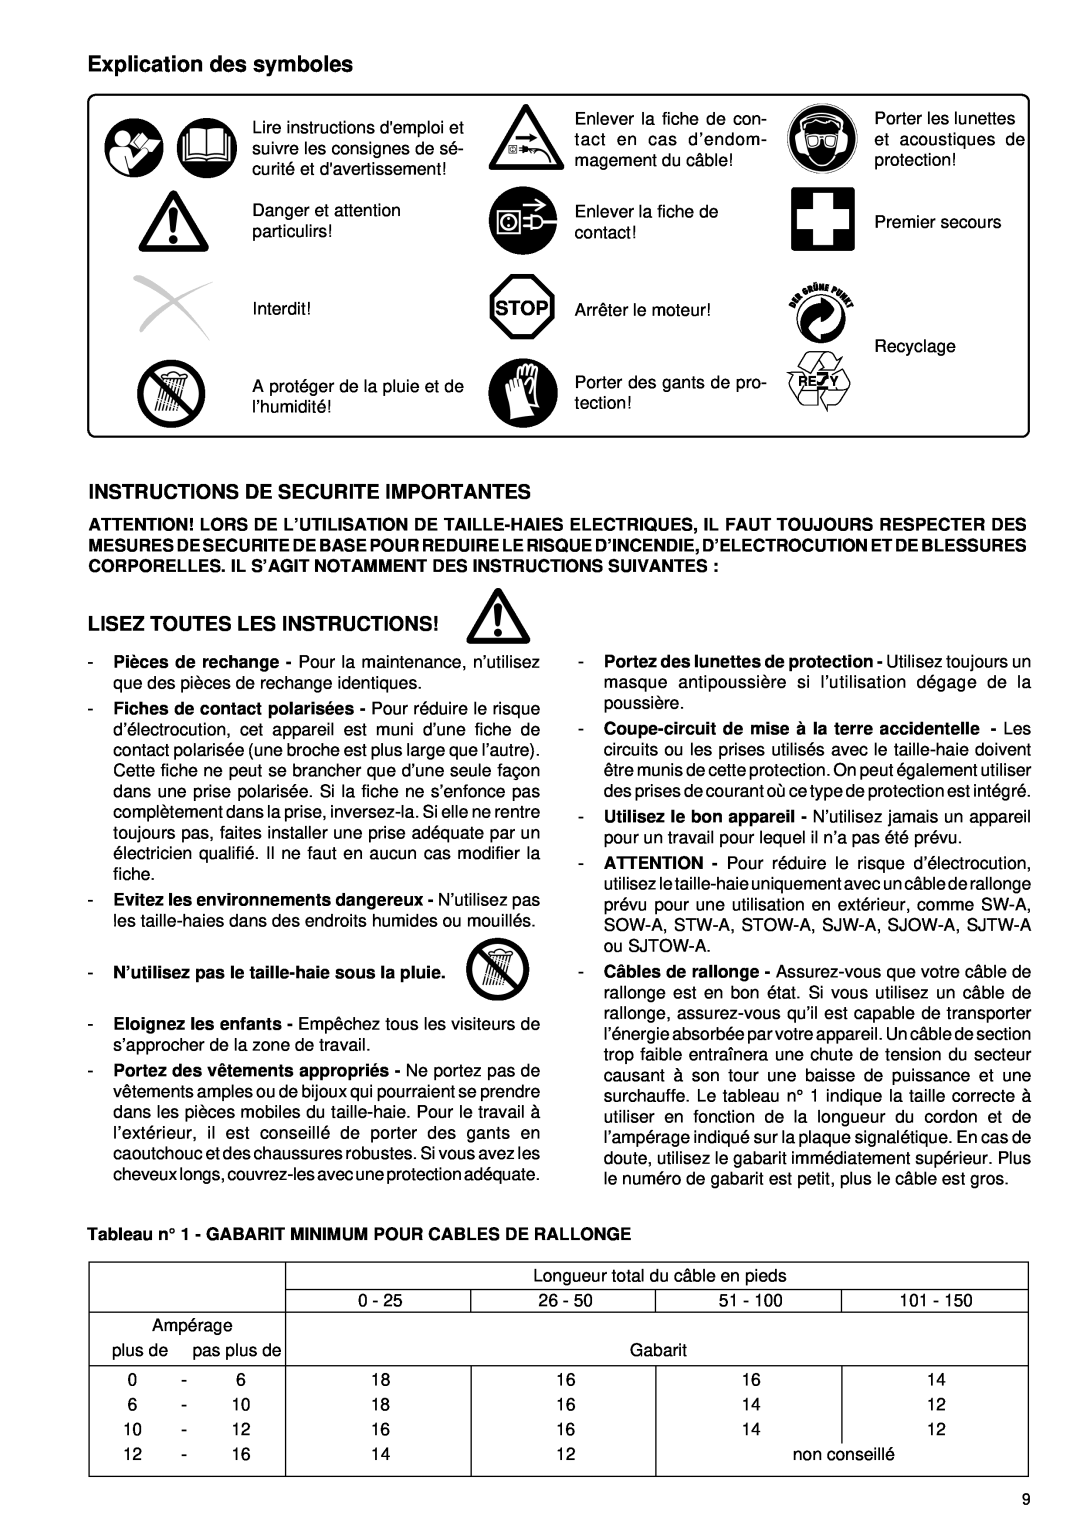 Makita UH 5530, UH 6330 Explication des symboles, Instructions De Securite Importantes, Lisez Toutes Les Instructions 